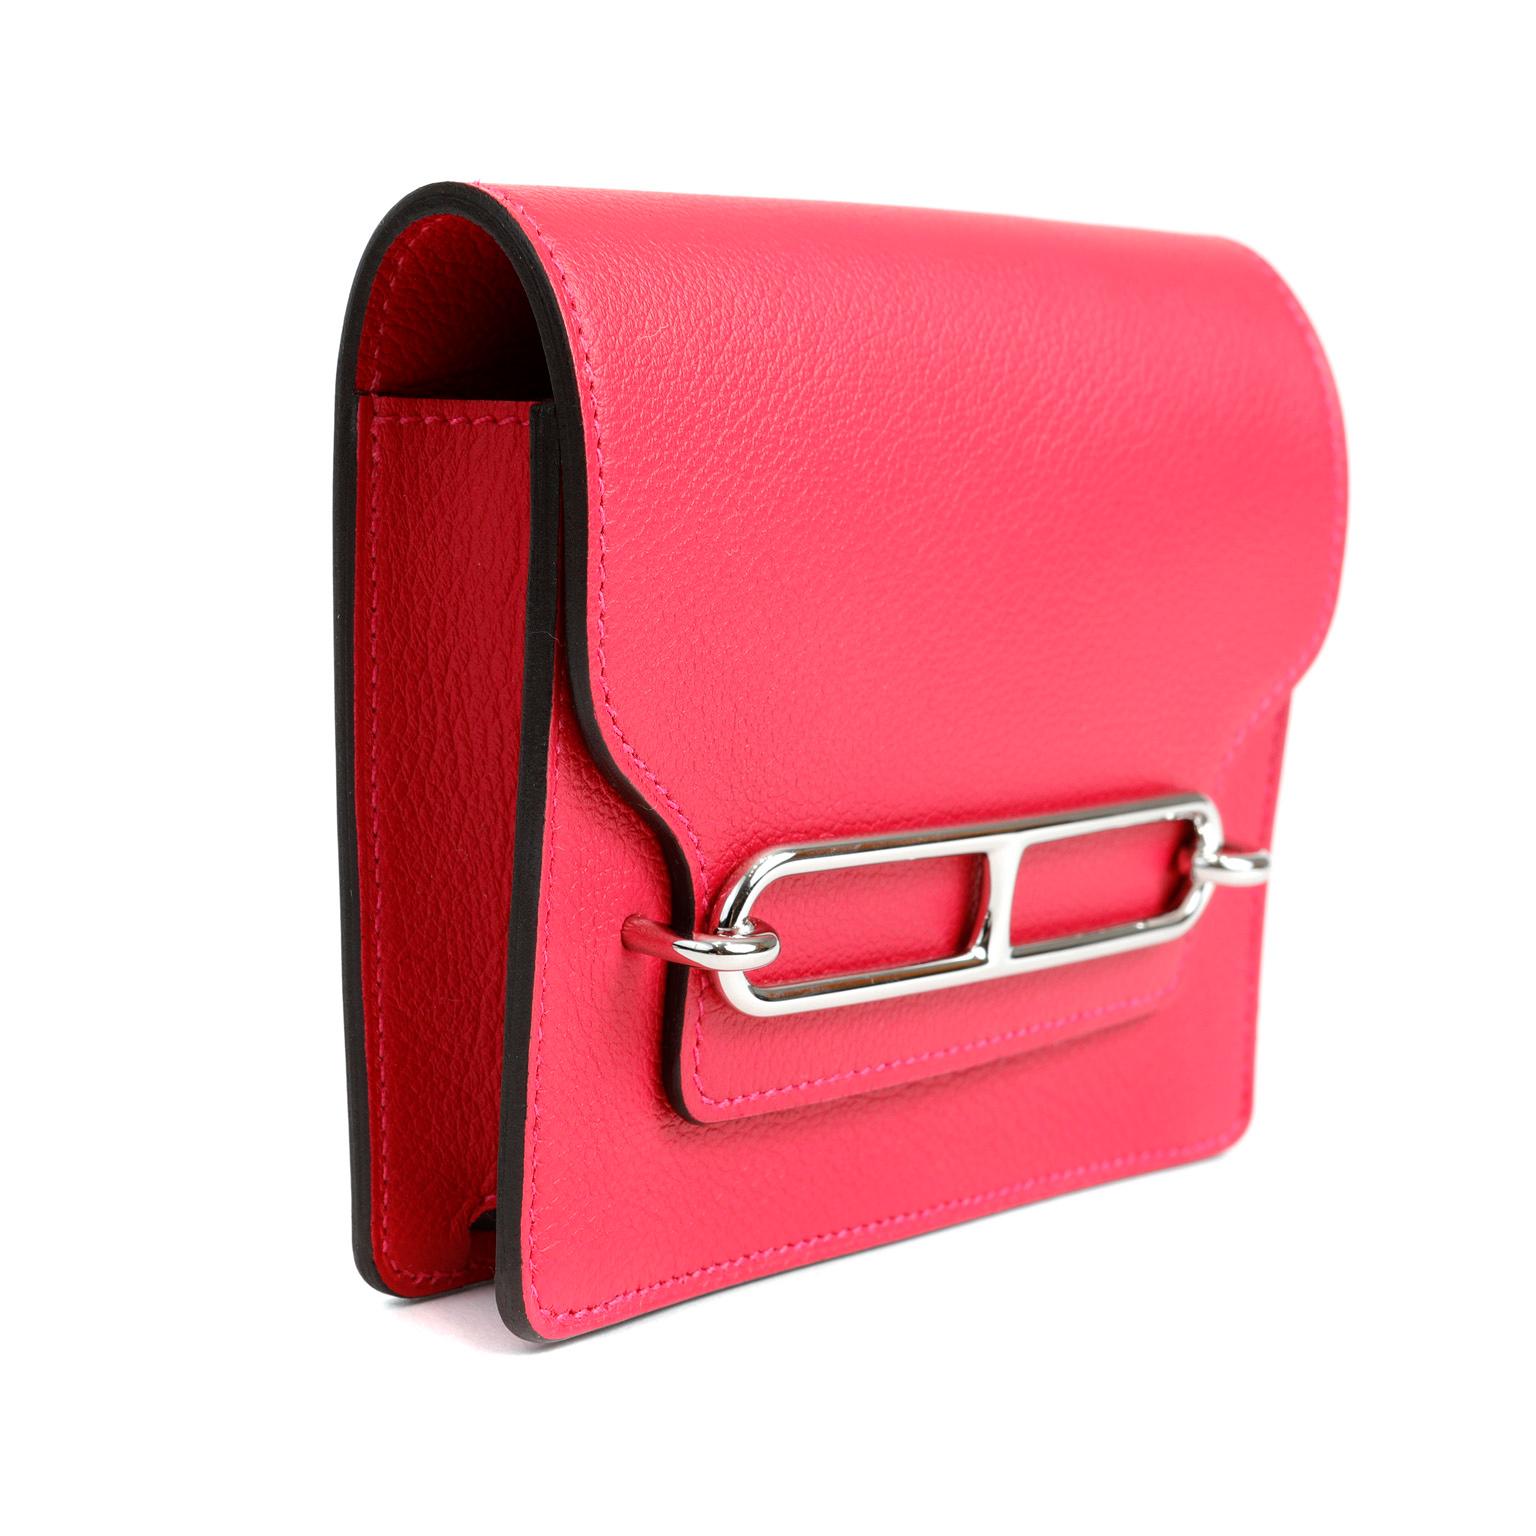 Cet authentique sac de ceinture Hermès Roulis est en parfait état et n'a jamais été porté.  En cuir Evercolor rouge rose, cette élégante pochette ajoute du punch à tout ensemble.  
Cuir Evercolor texturé et durable en rouge rosé.  Le rabat avant se